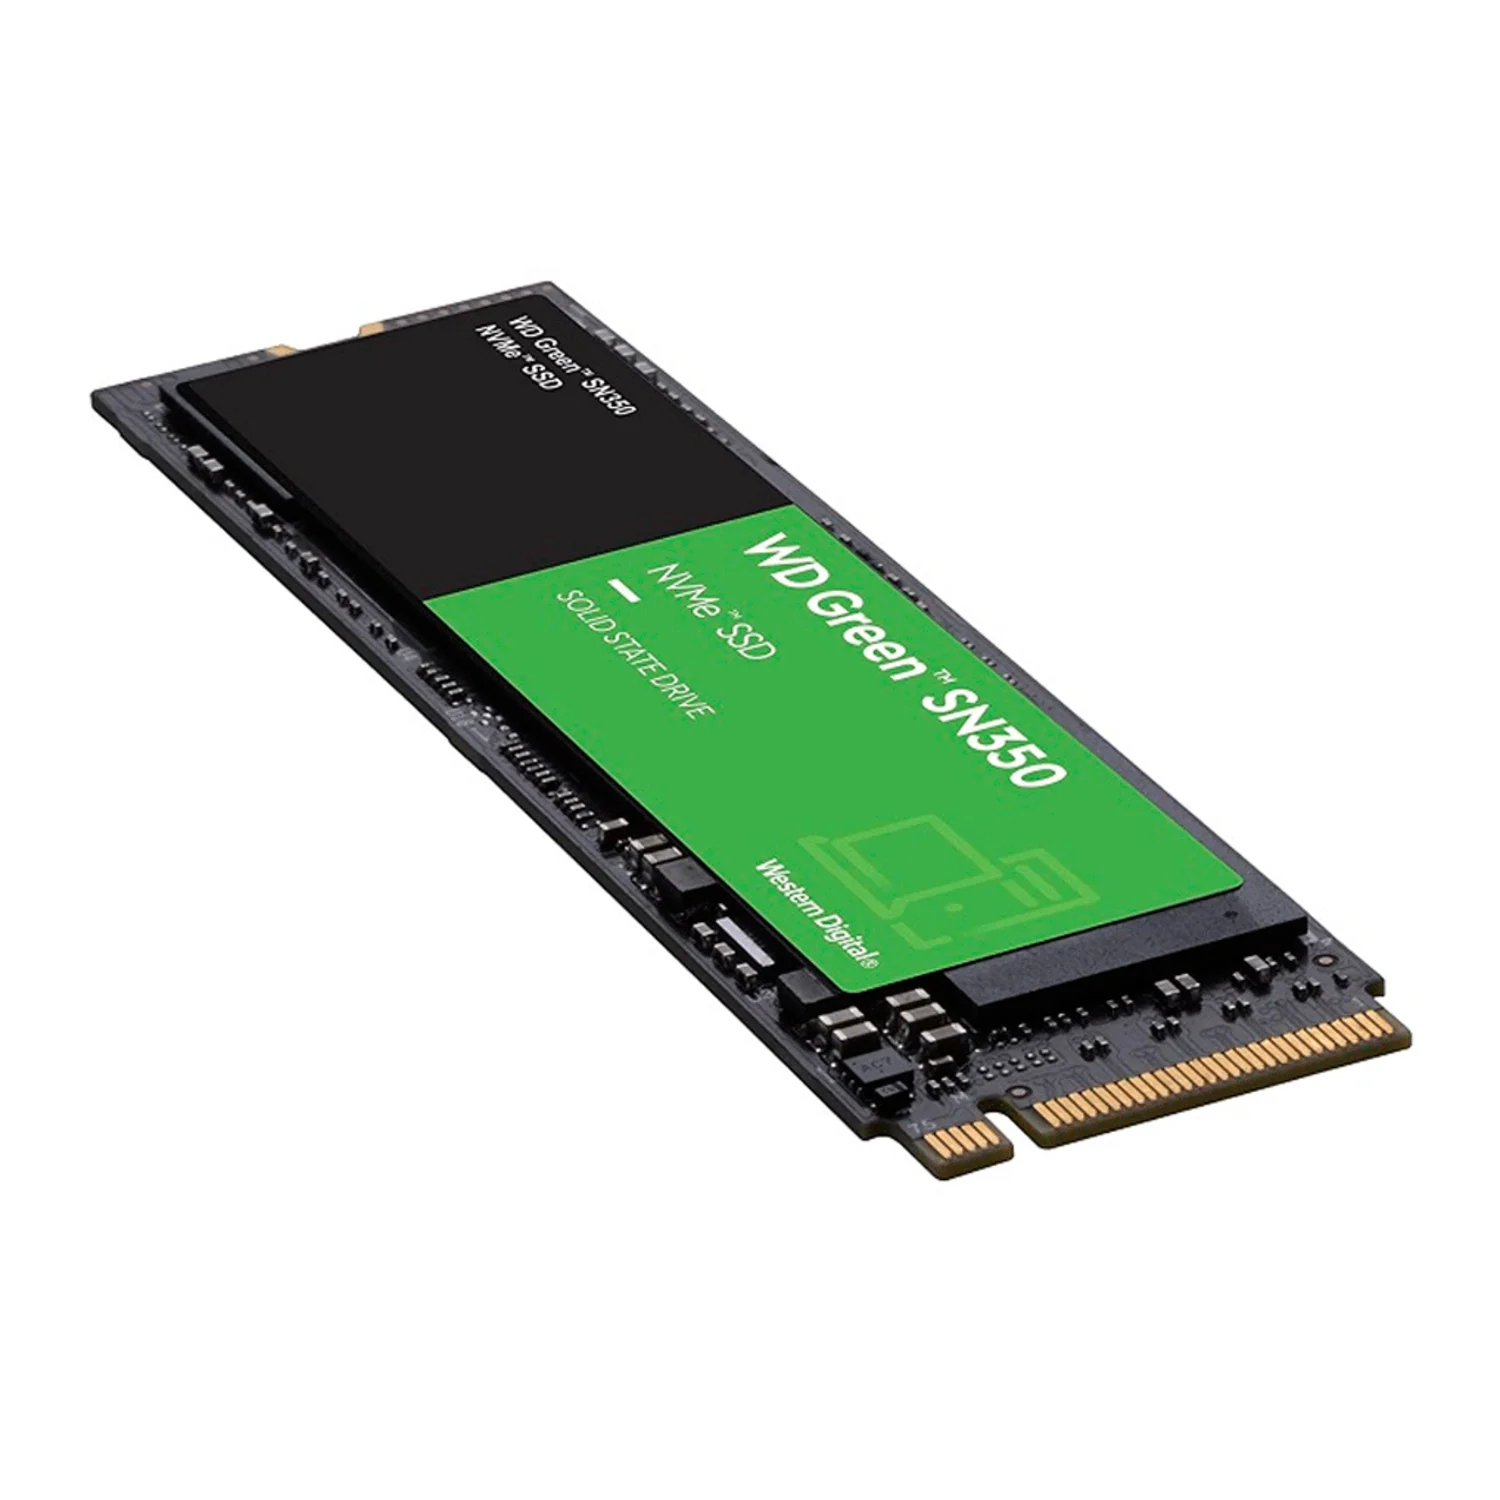 HD SSD Western 480GB Green WD M.2 NVME - WDS480G2G0C